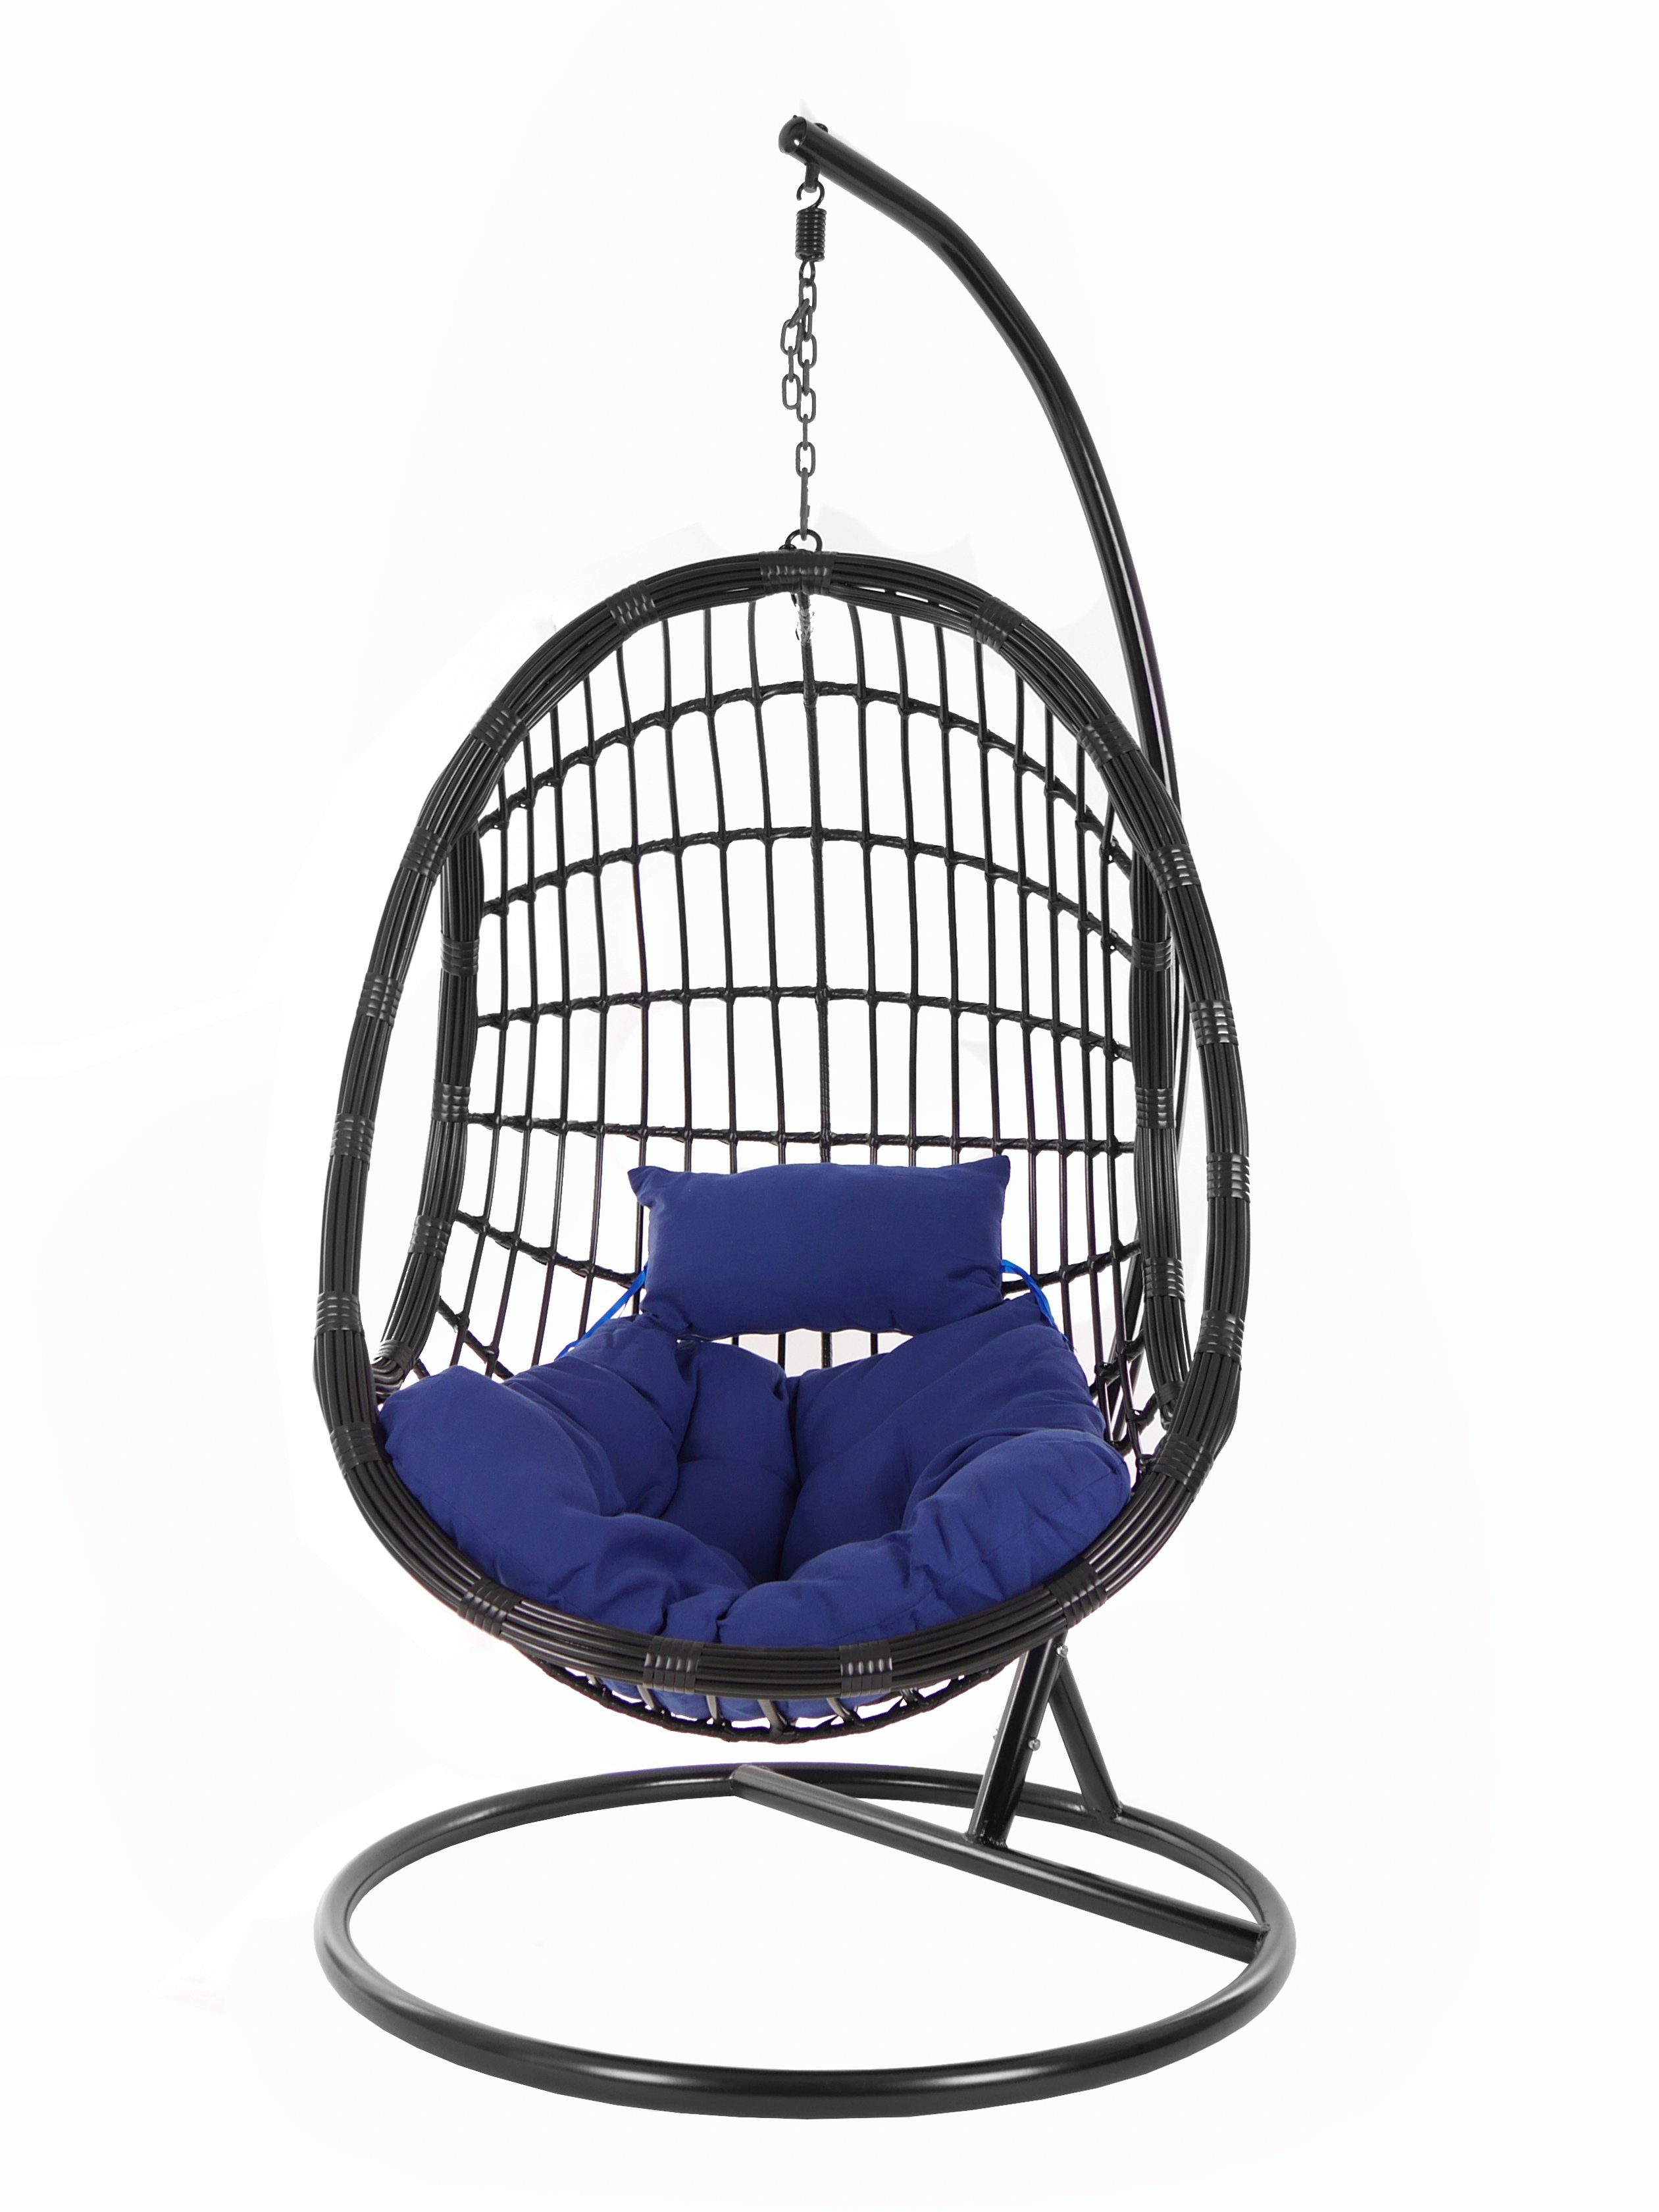 KIDEO Hängesessel PALMANOVA black, Swing dunkelblau Design mit Gestell (5900 Hängesessel navy) Kissen, Chair, und Schwebesessel, schwarz, edles Loungemöbel